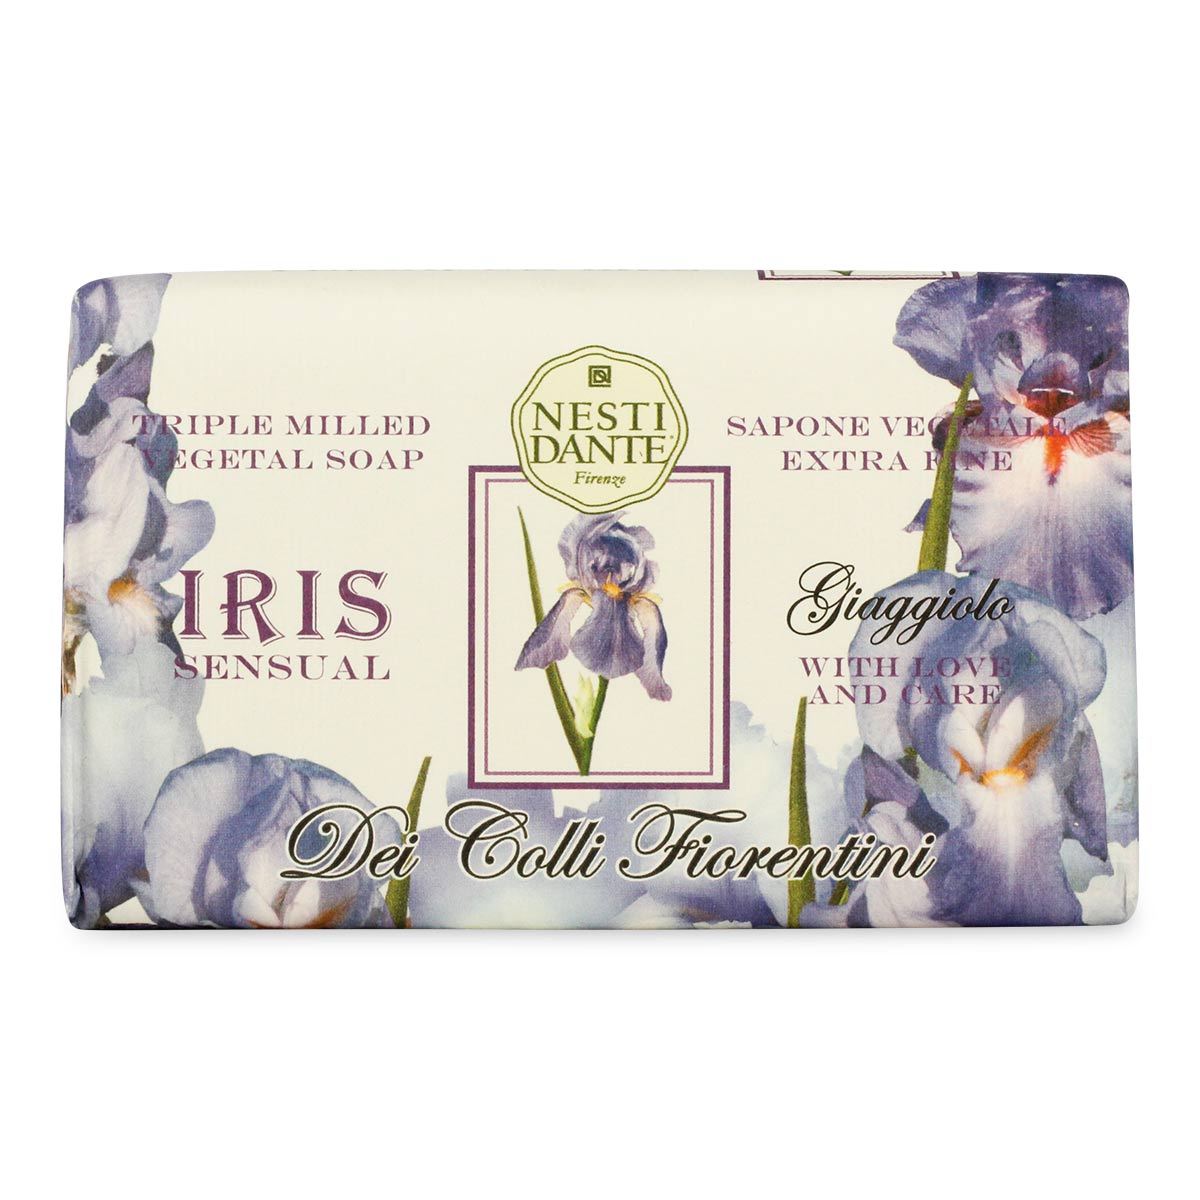 Primary image of Iris Soap